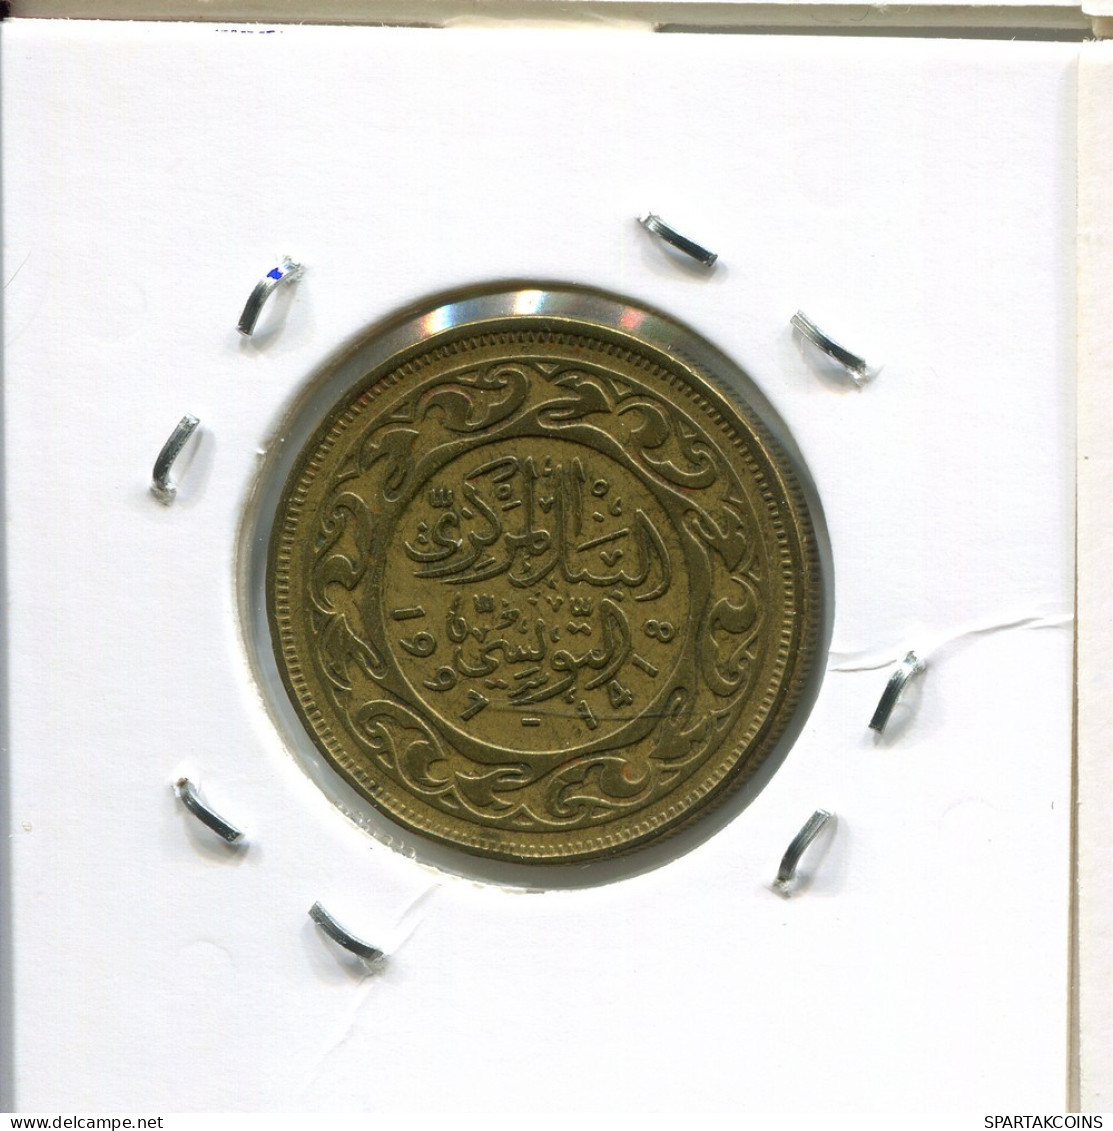 50 MILLIMES 1997 TUNISIA Coin #AP828.2.U.A - Tunesië